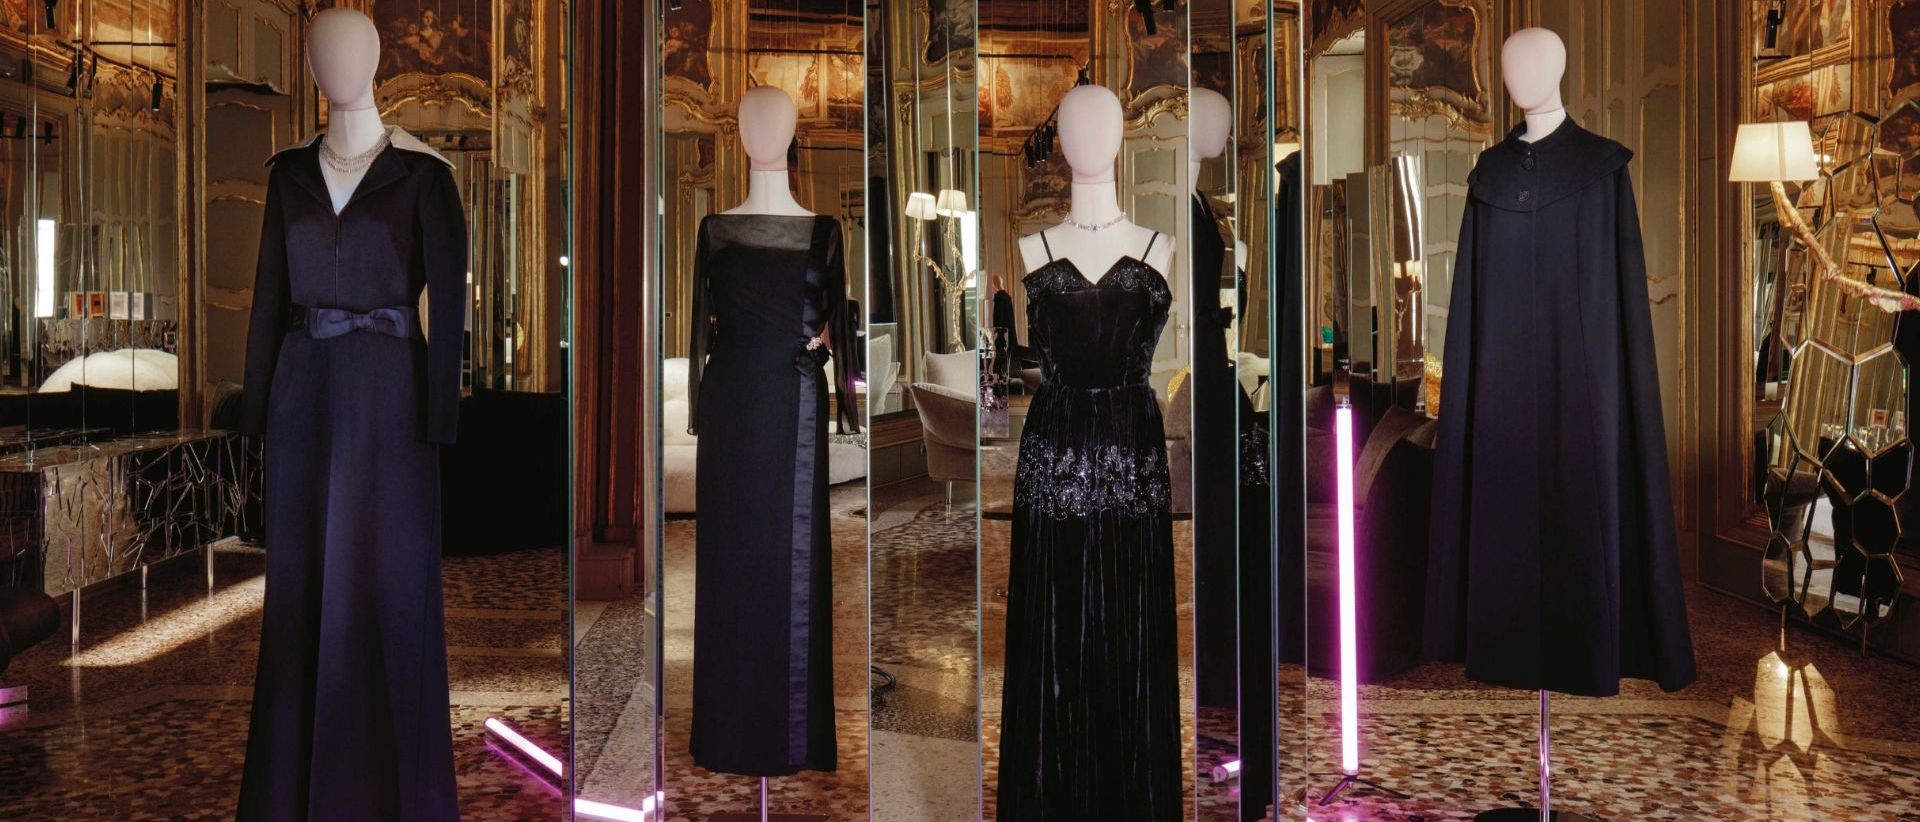  Vêtements noirs. Une sélection de vêtements portés par la diva, signés par Biki Milan. 